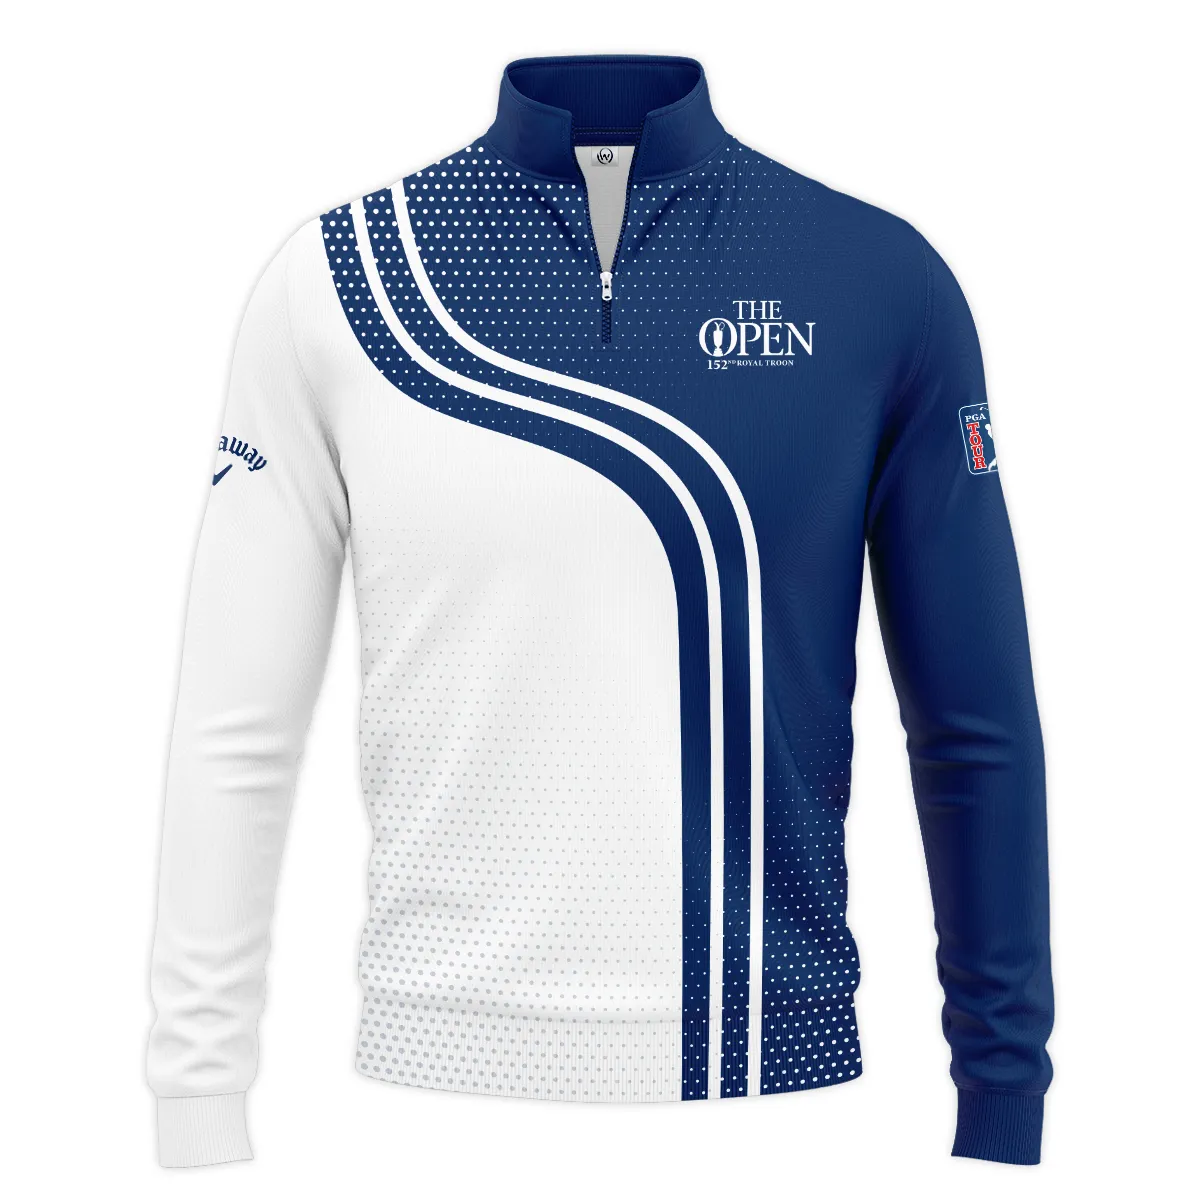 Golf Blue Mix White Sport 152nd Open Championship Pinehurst Callaway Sleeveless Jacket All Over Prints QTTOP1806A1CLWSJK